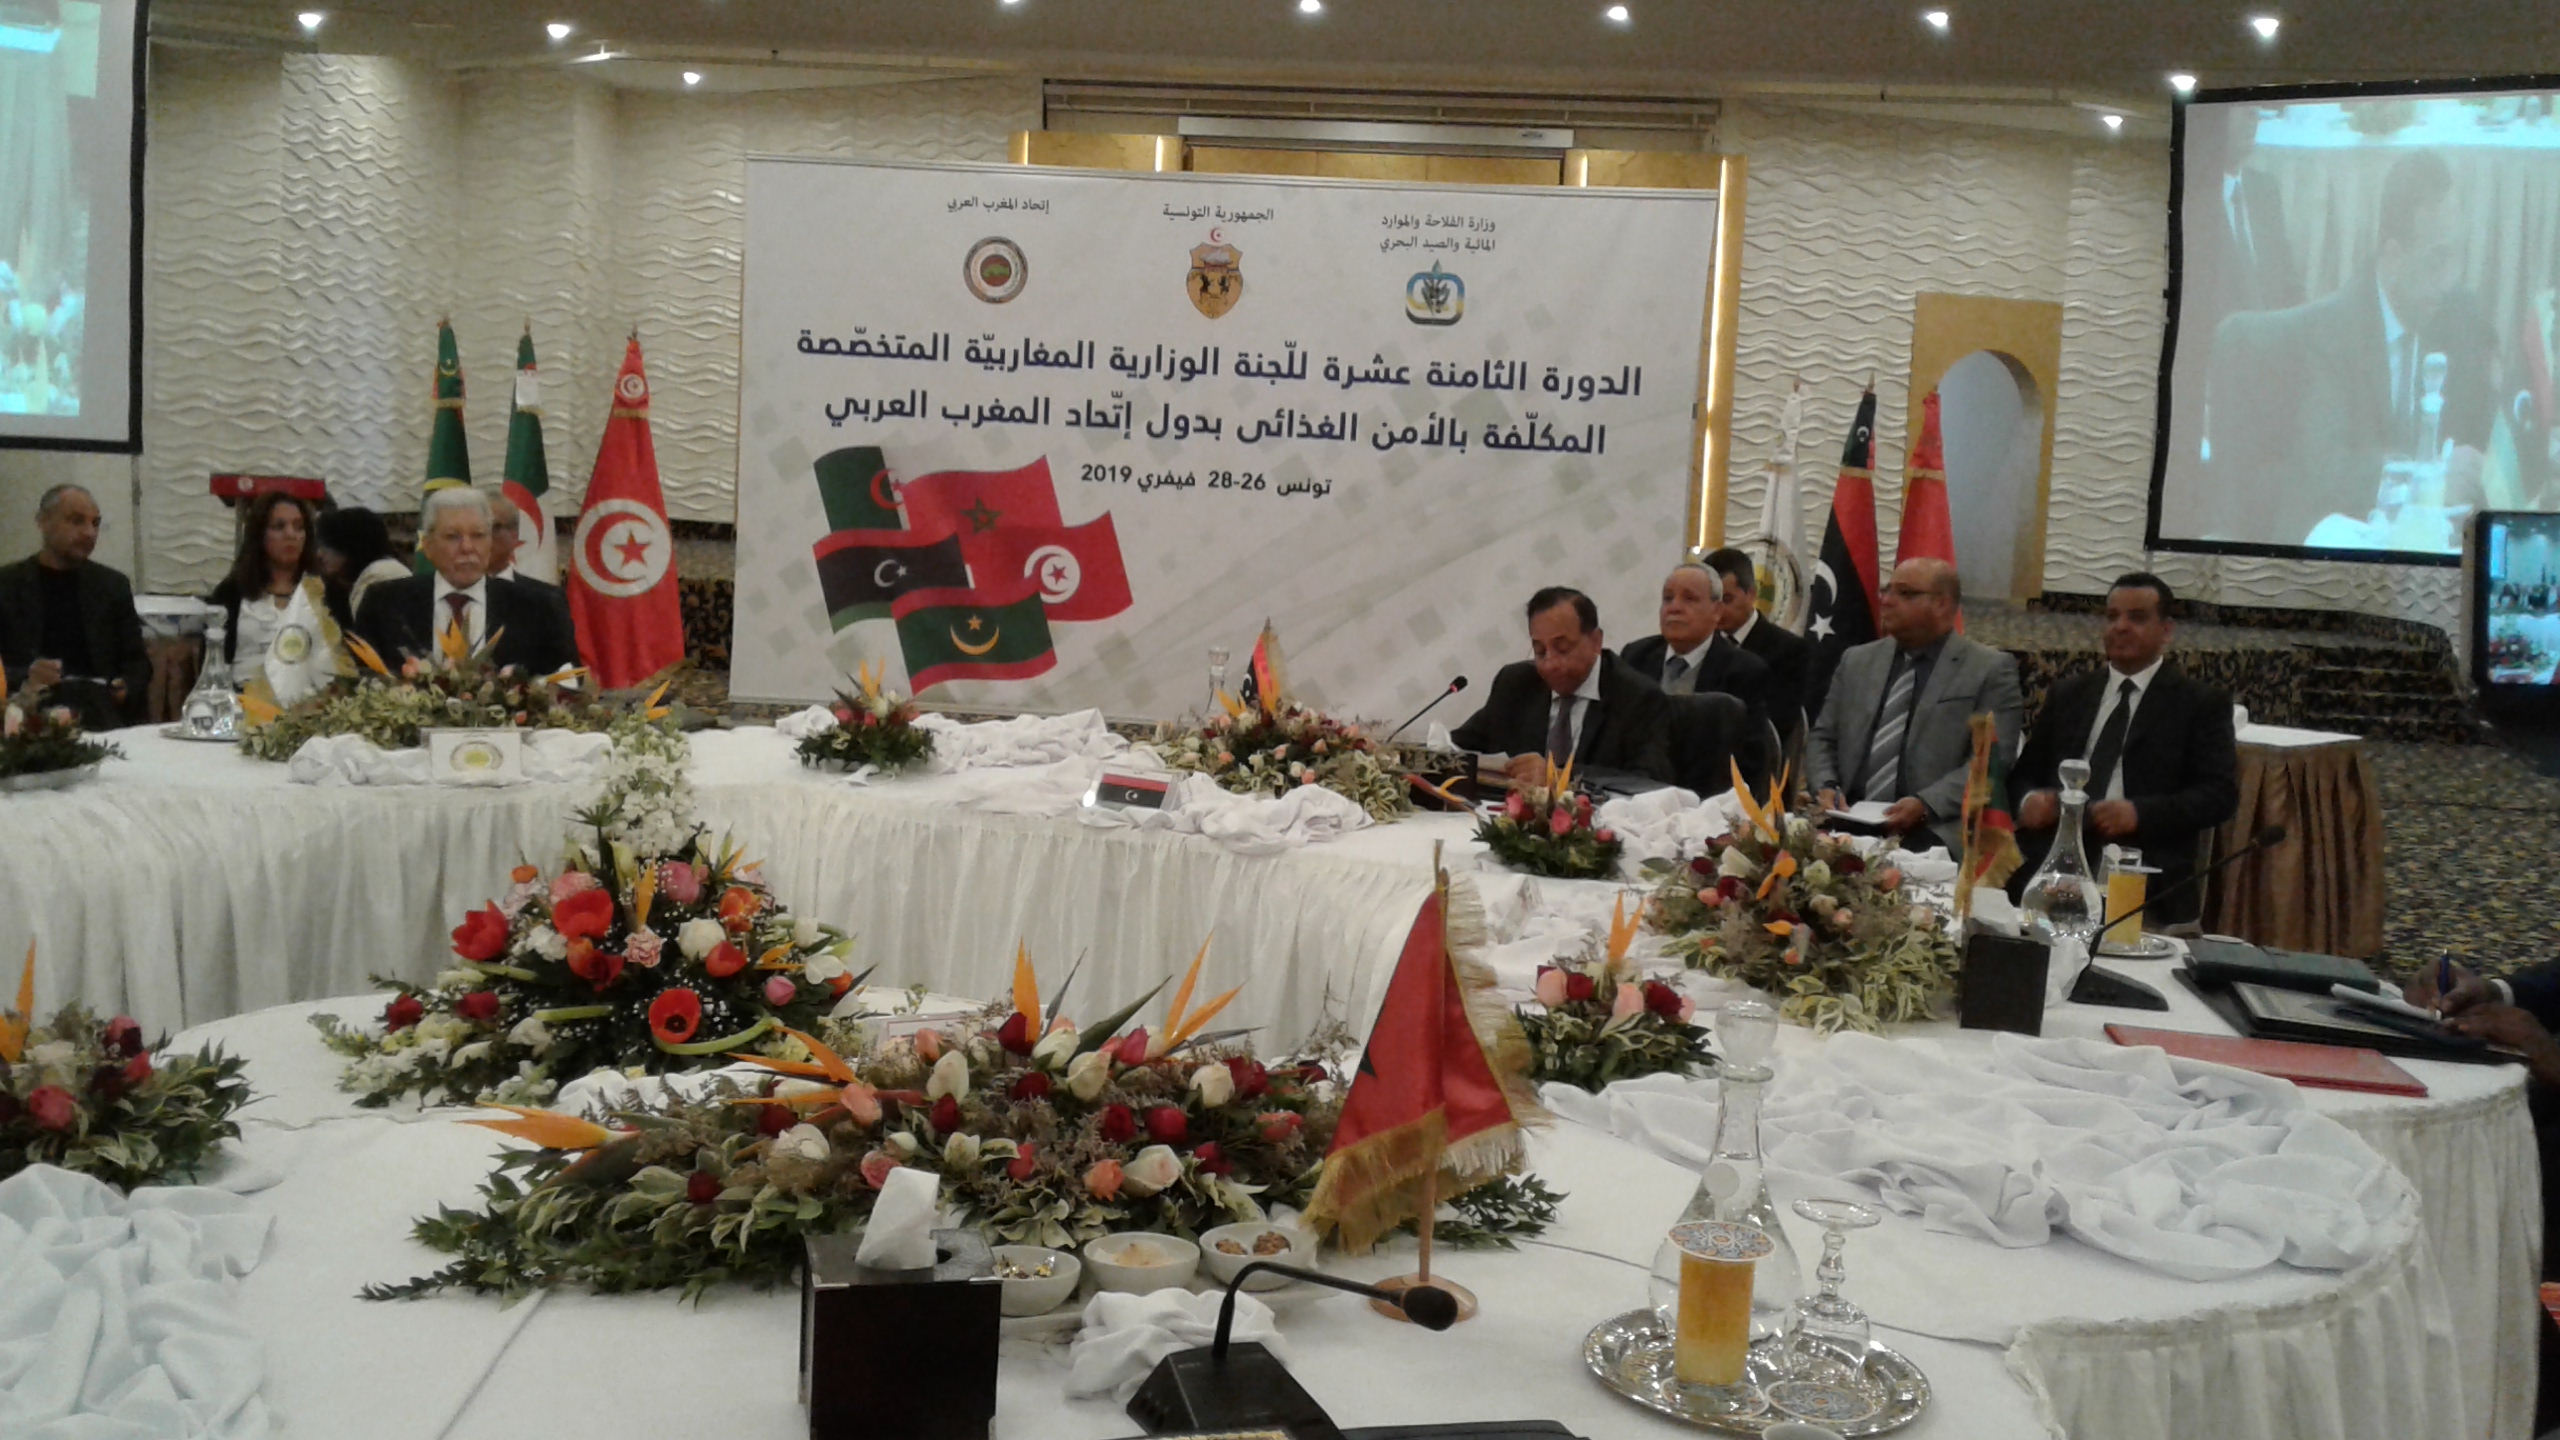 بسبب الخلافات مع الجزائر: المغرب يقاطع الدورة 18 للجنة الوزارية المغاربية بتونس